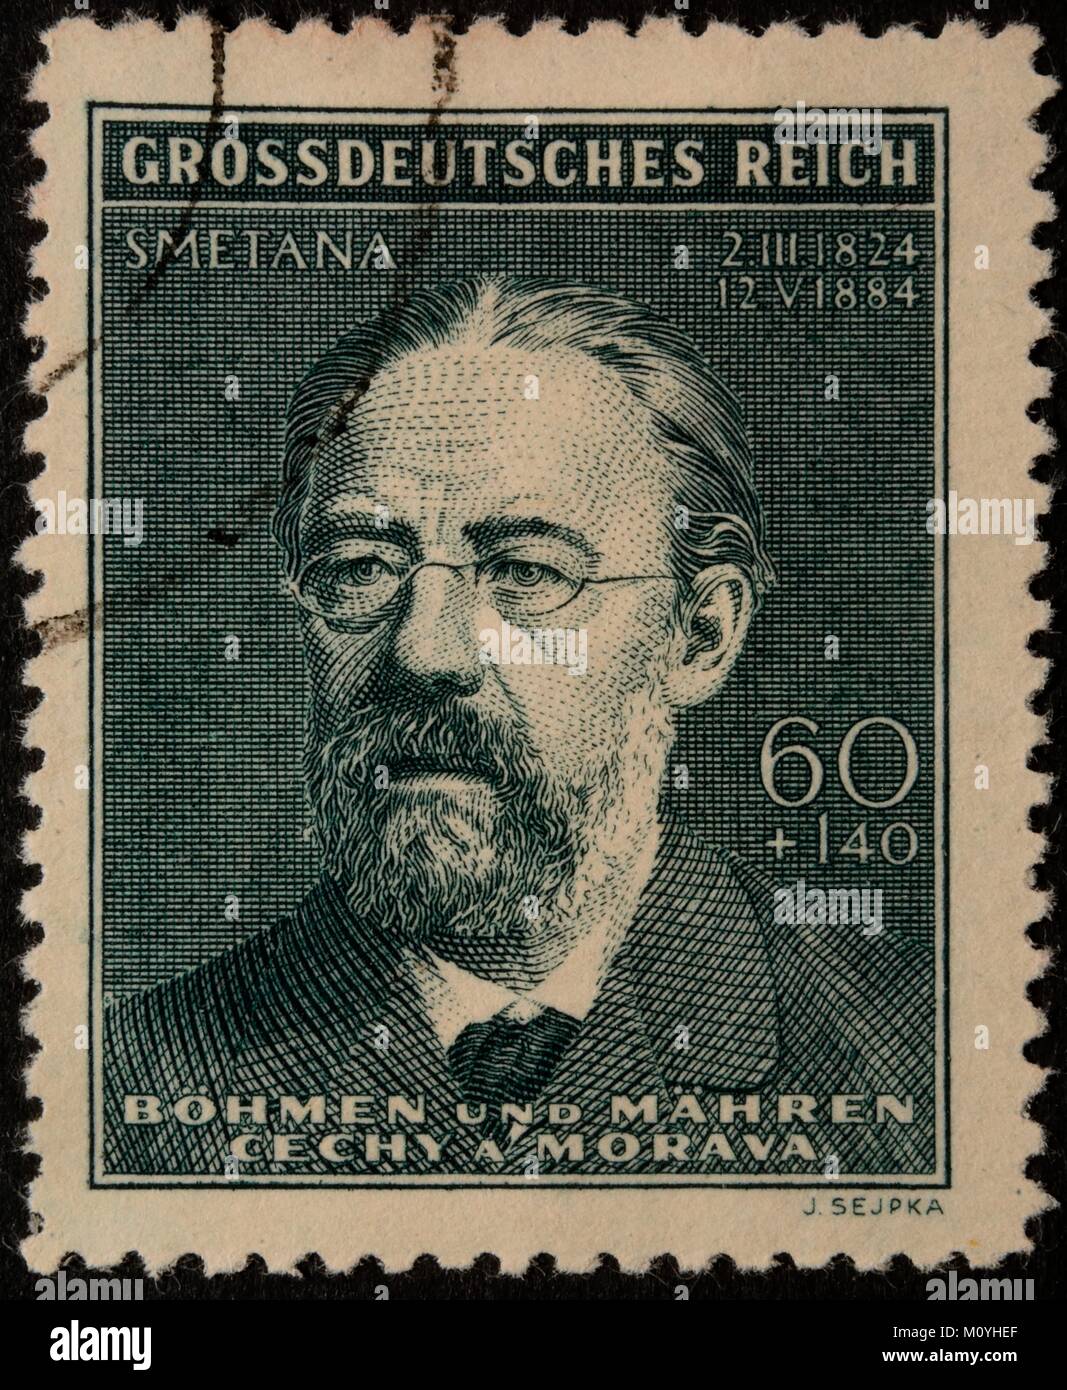 Bedrich Smetana, compositeur tchèque,un portrait sur un timbre Allemand 1944 Banque D'Images